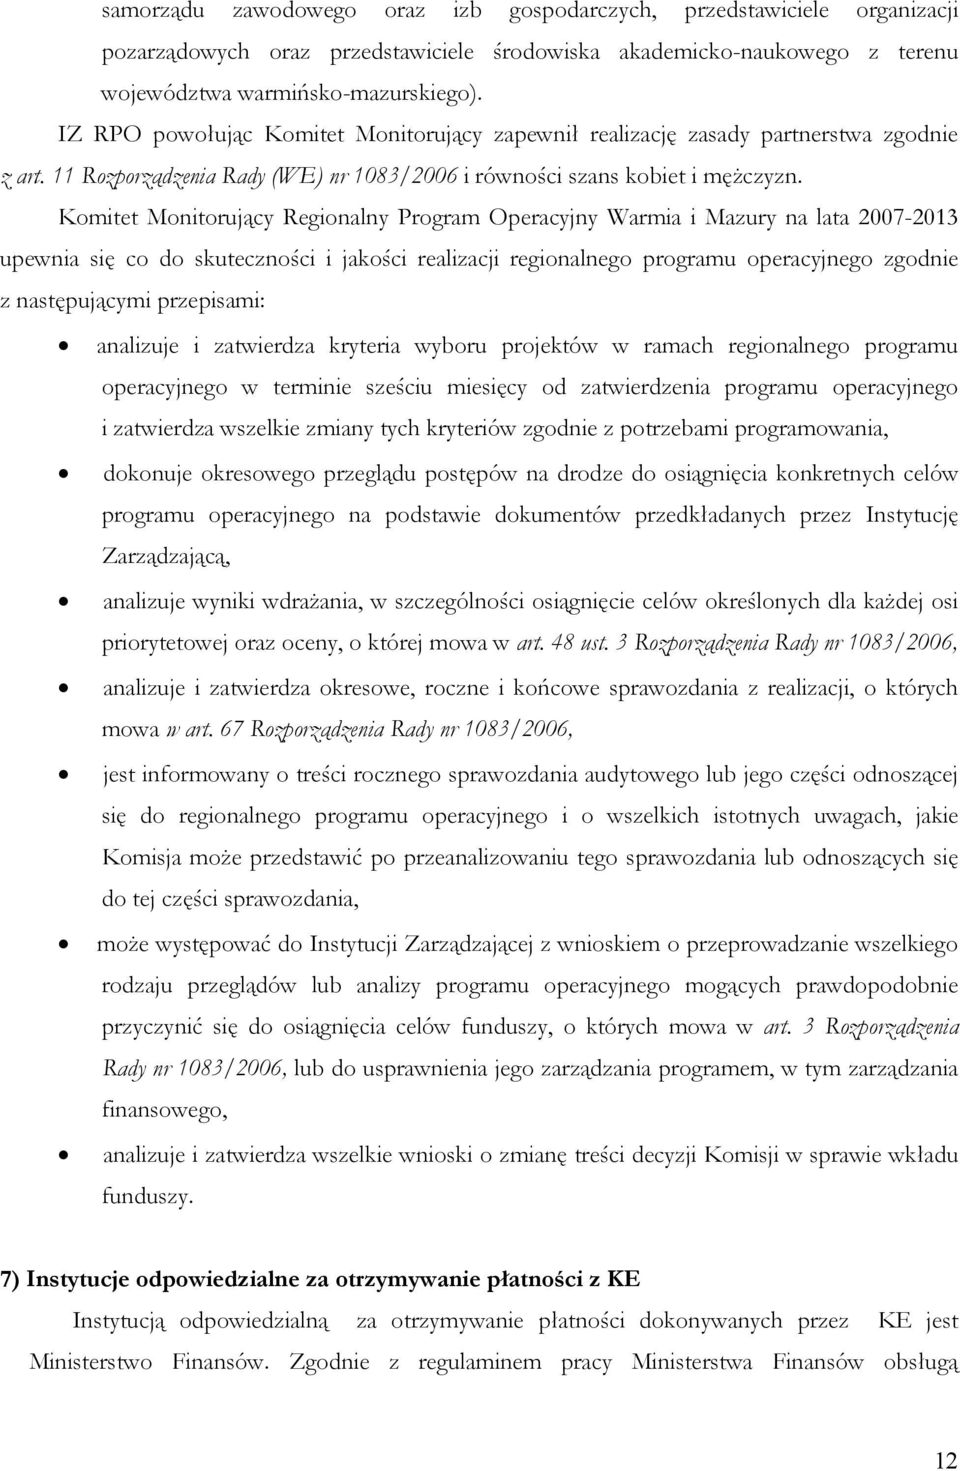 Komitet Monitorujący Regionalny Program Operacyjny Warmia i Mazury na lata 2007-2013 upewnia się co do skuteczności i jakości realizacji regionalnego programu operacyjnego zgodnie z następującymi